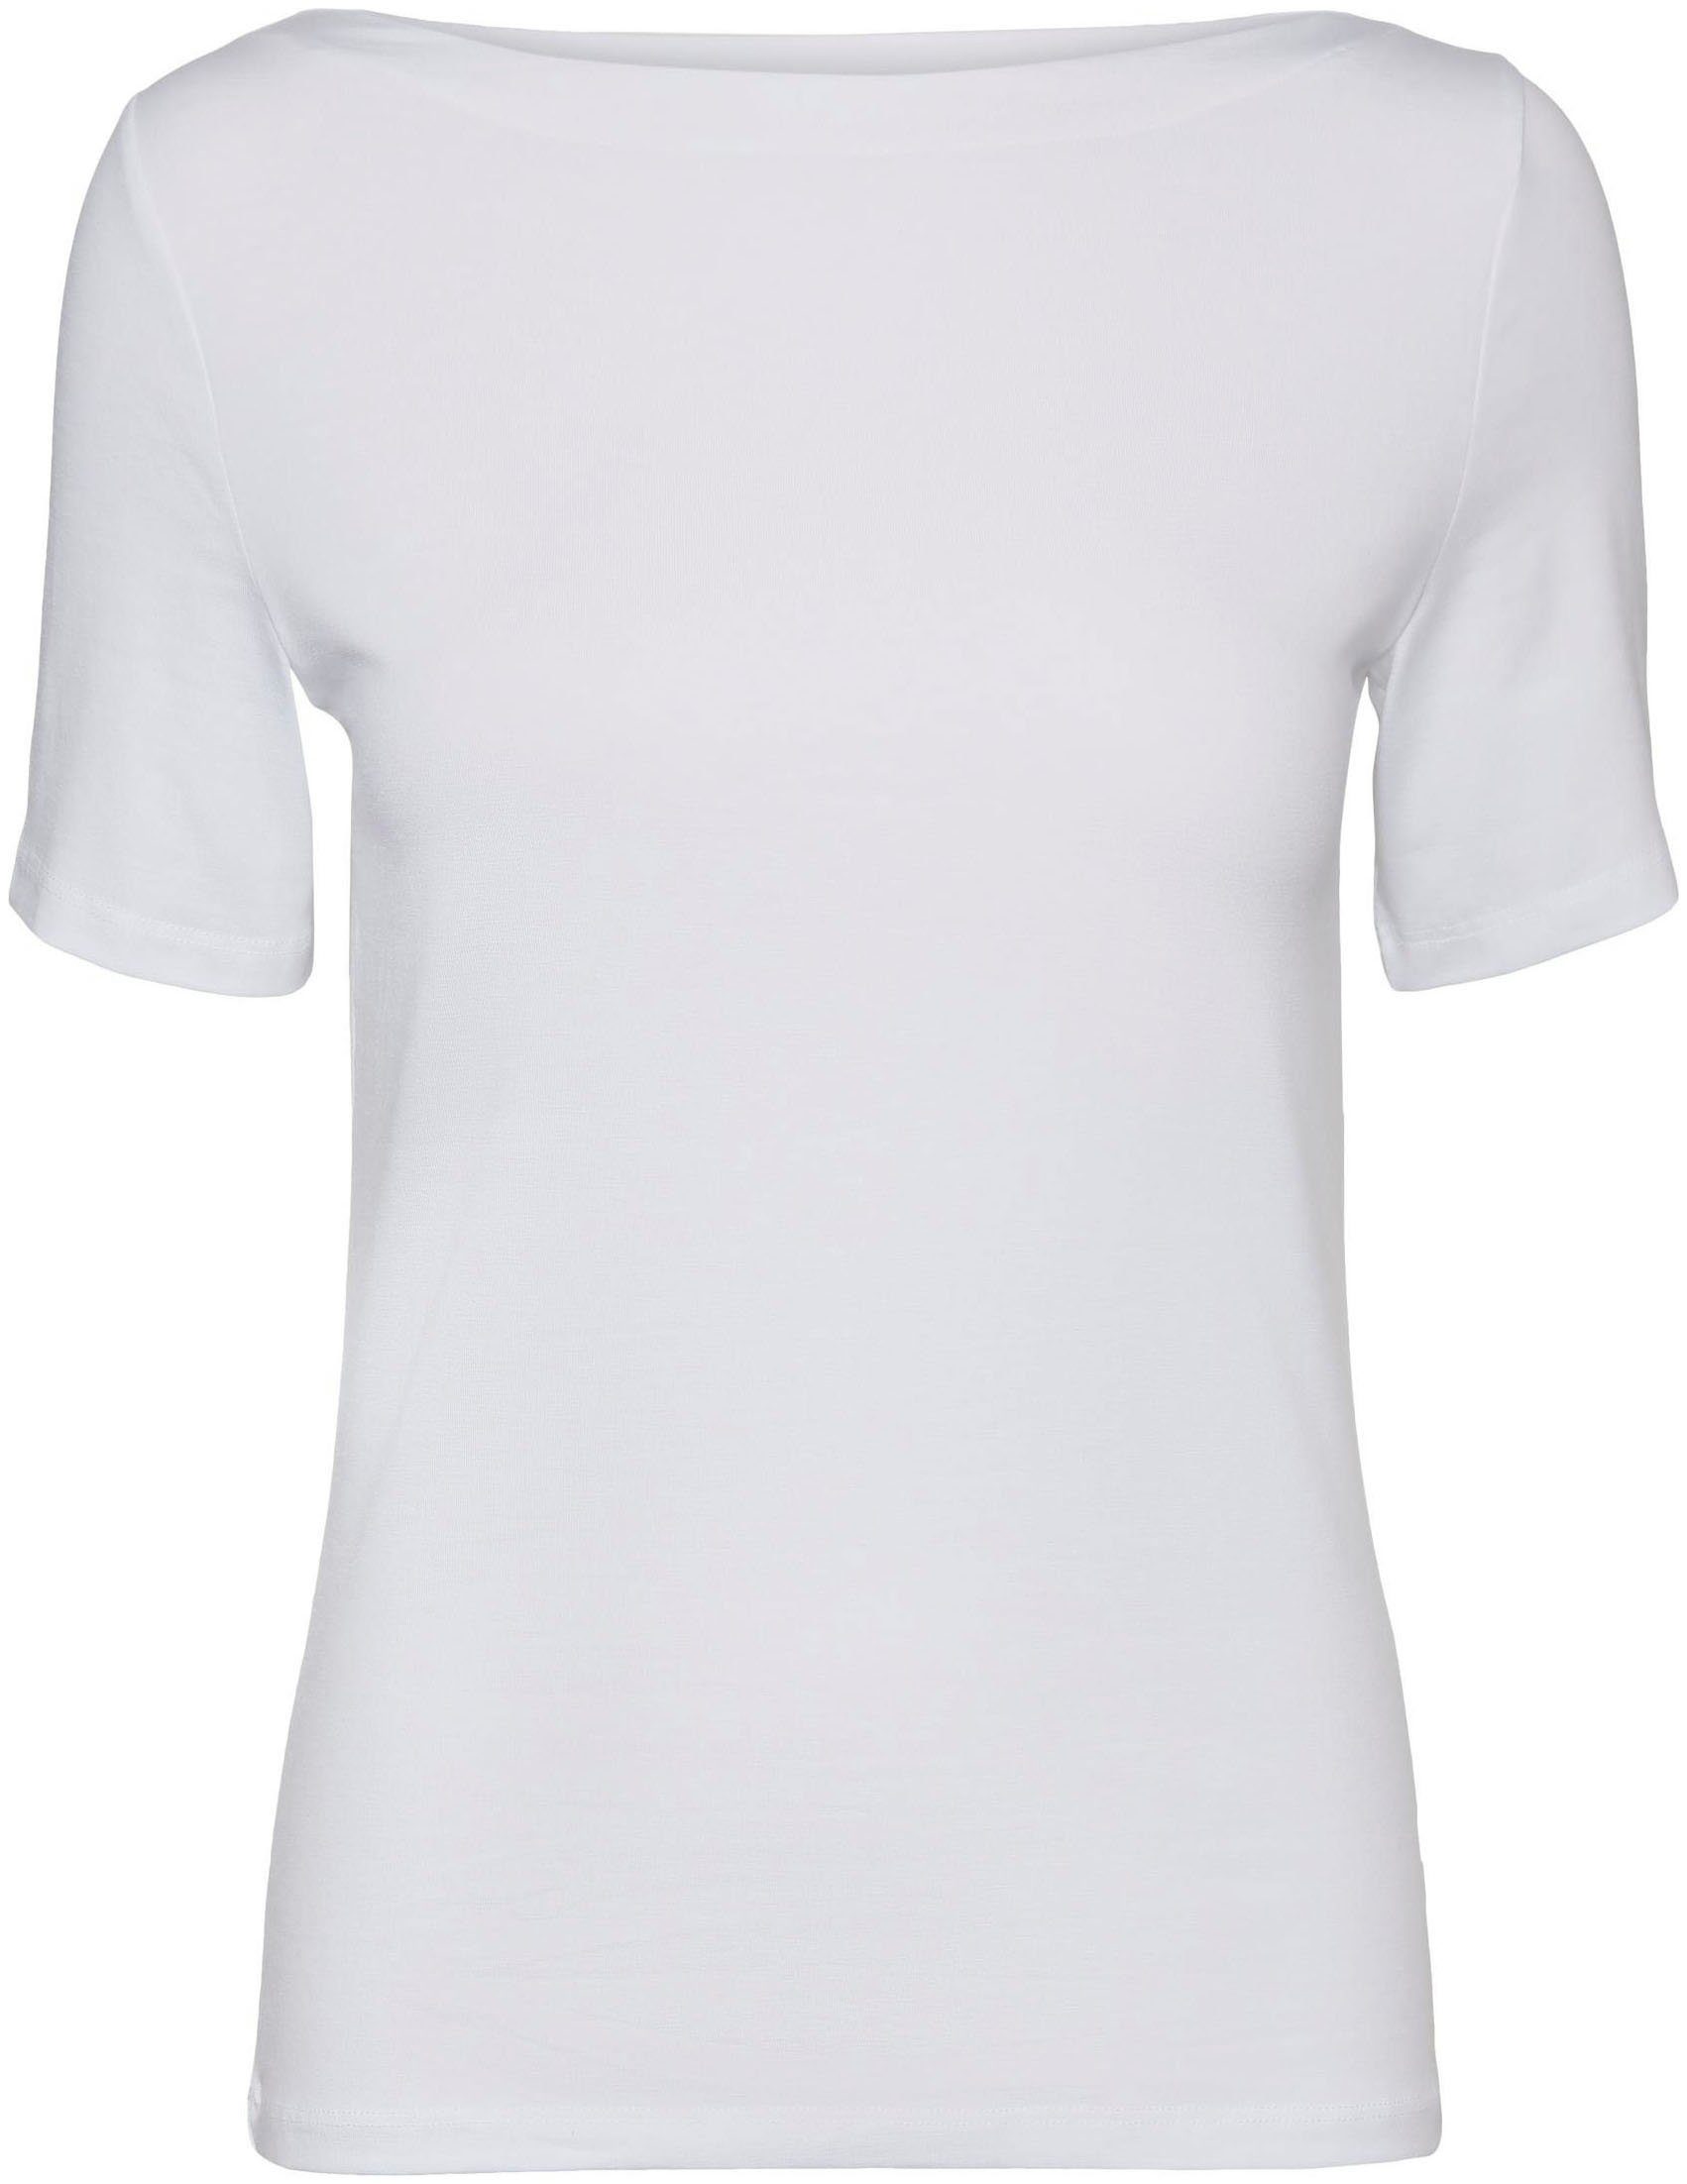 S/S Kurzarmshirt Bright White Moda NOOS TOP VMPANDA MODAL Vero